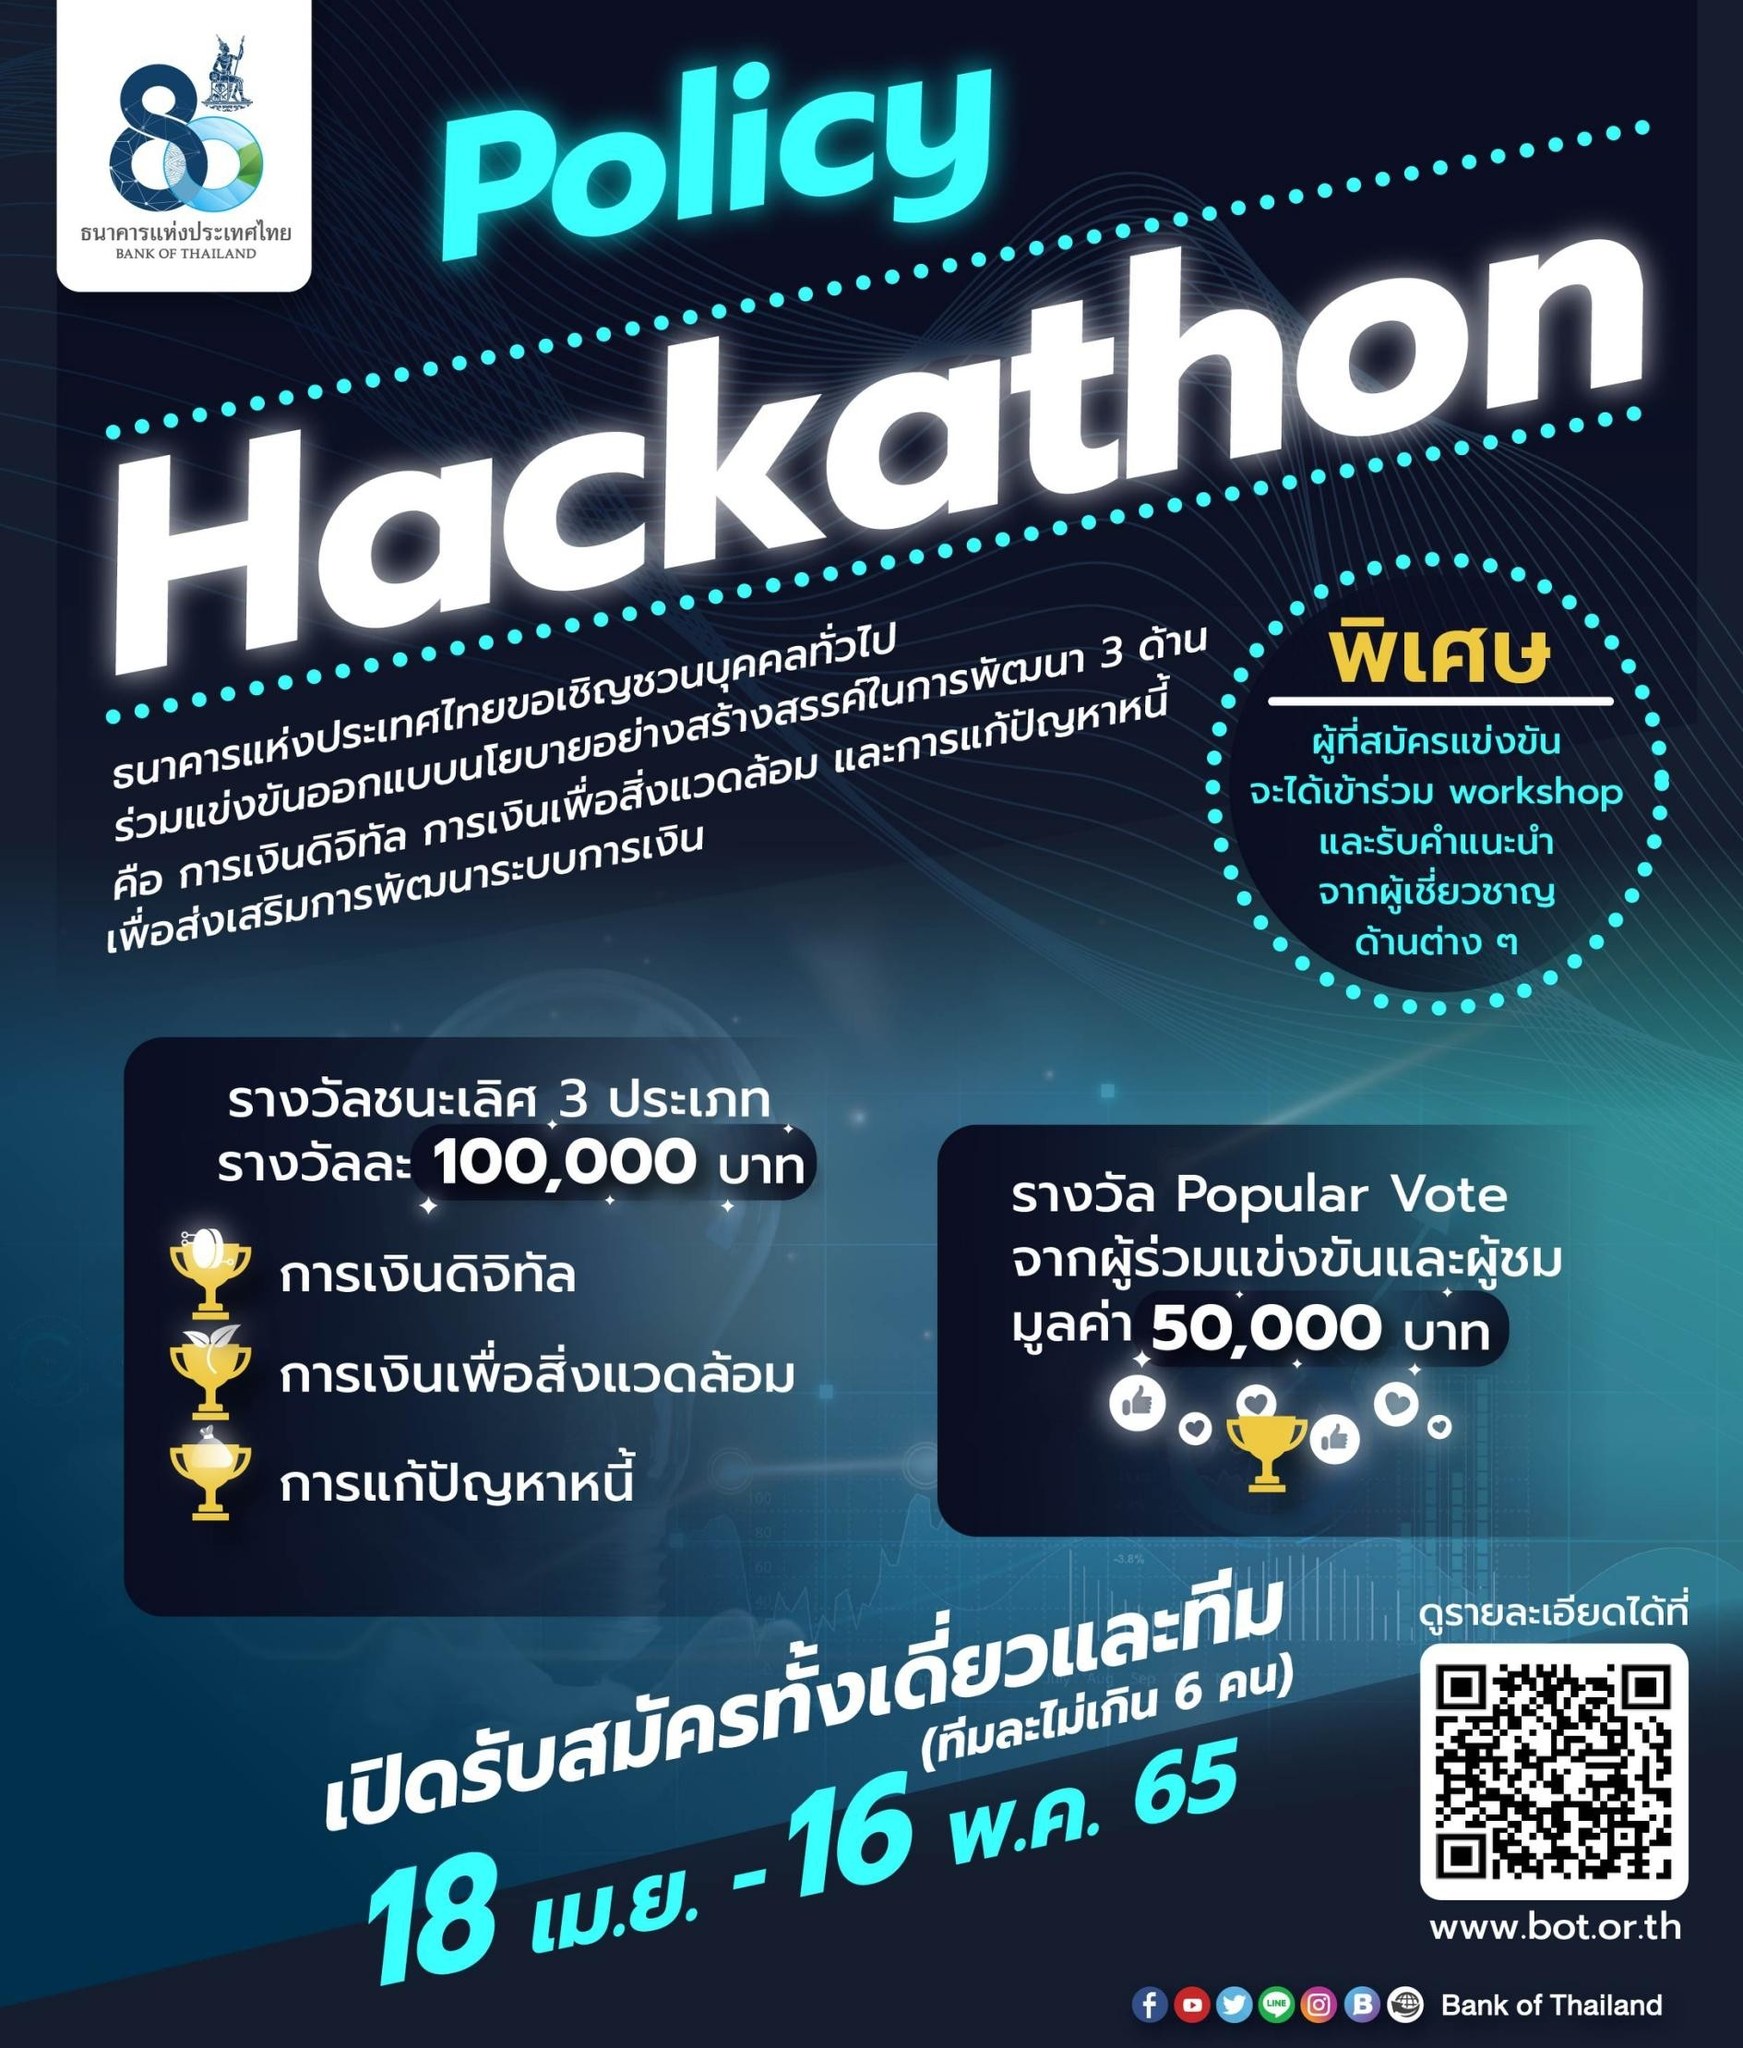 Policy Hackathon Bank of Thailand